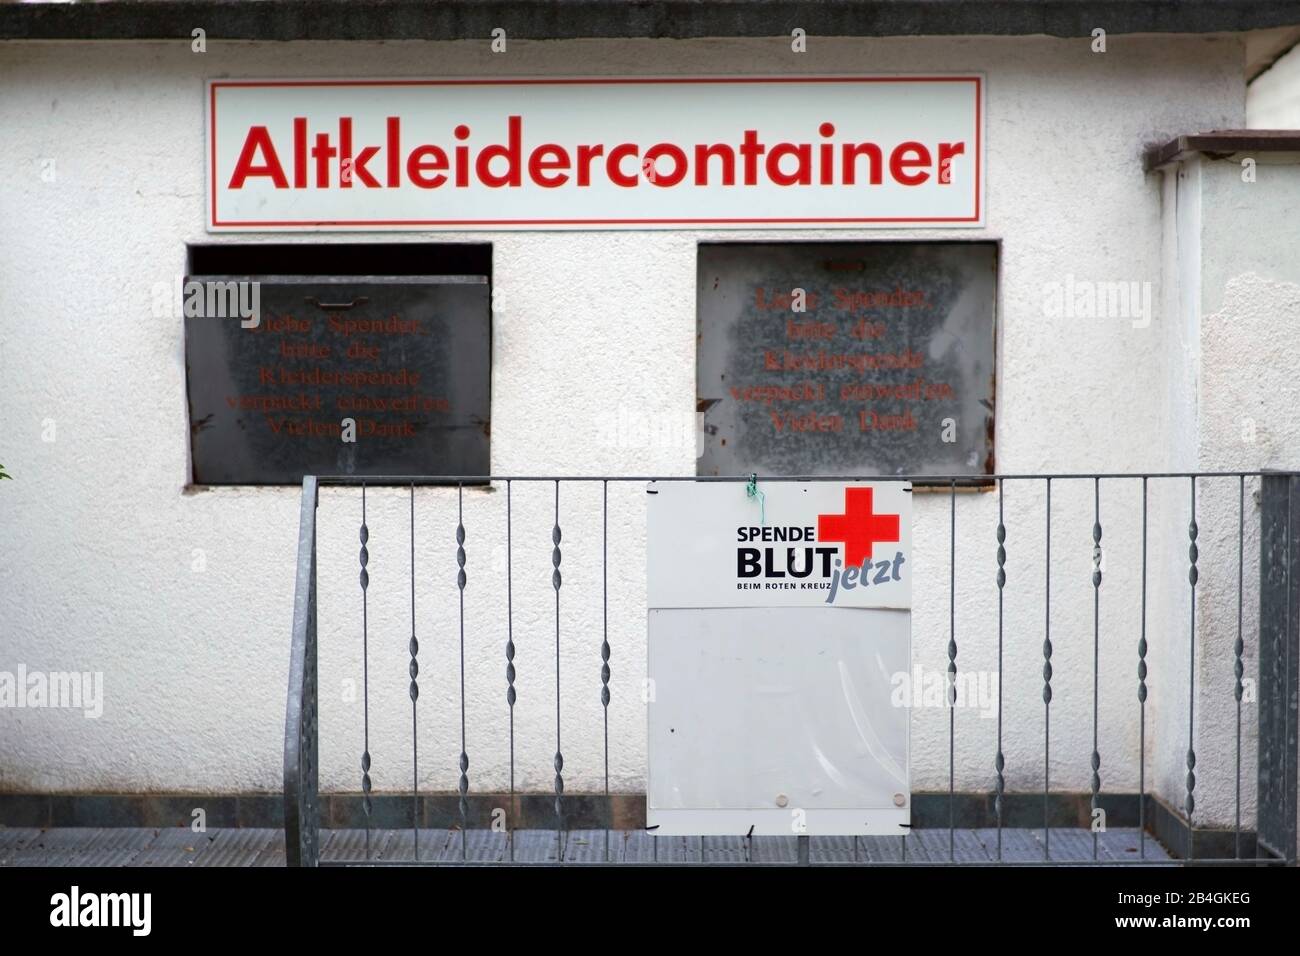 Ein Container für Bekleidung spenden und Blut spenden der Hilfsorganisation Rotes Kreuz. Stockfoto